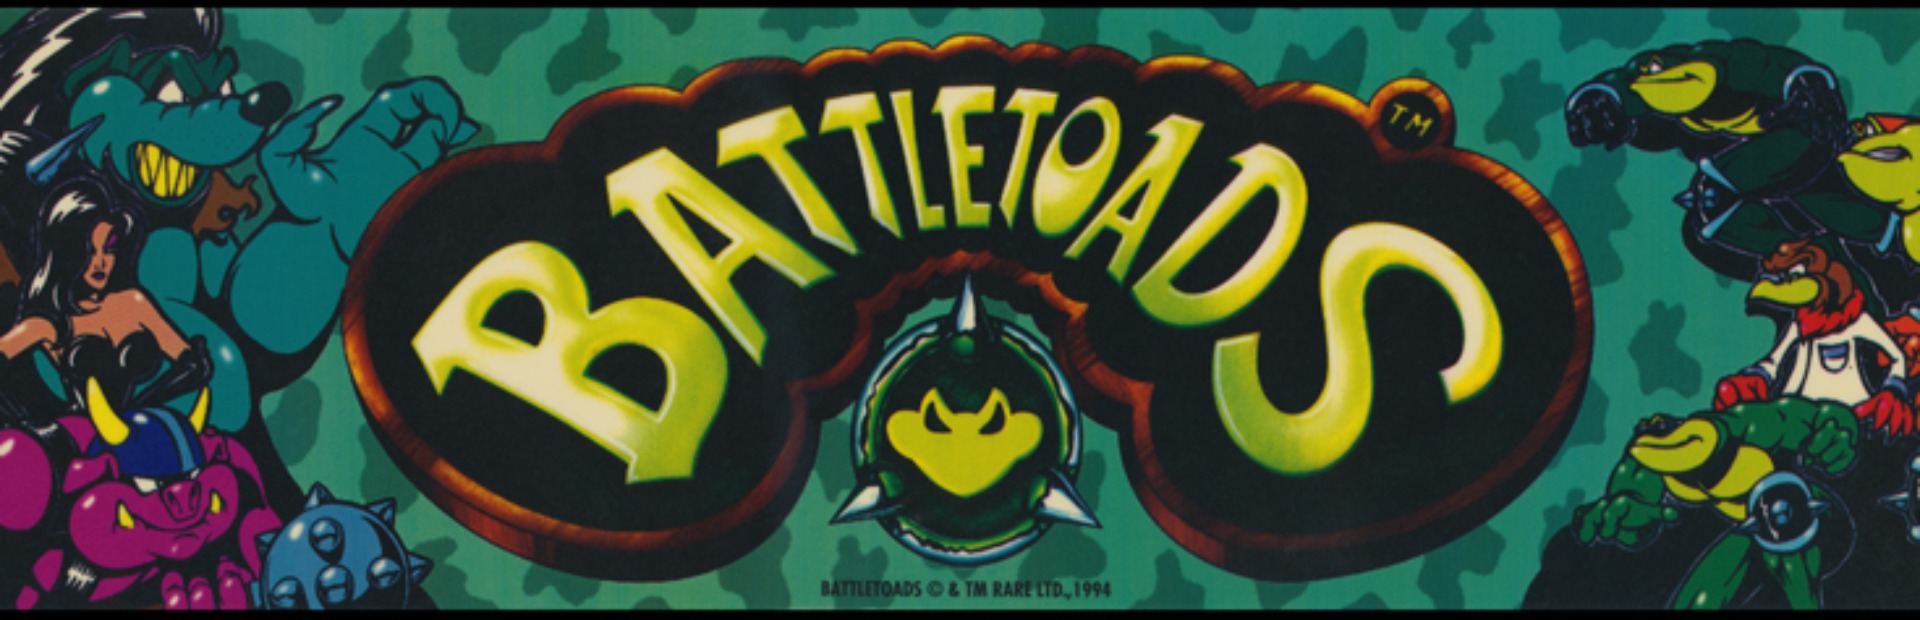 Композитор battletoads. Батлтоадс Раш. Battletoads Arcade. Игровой автомат Battletoads.